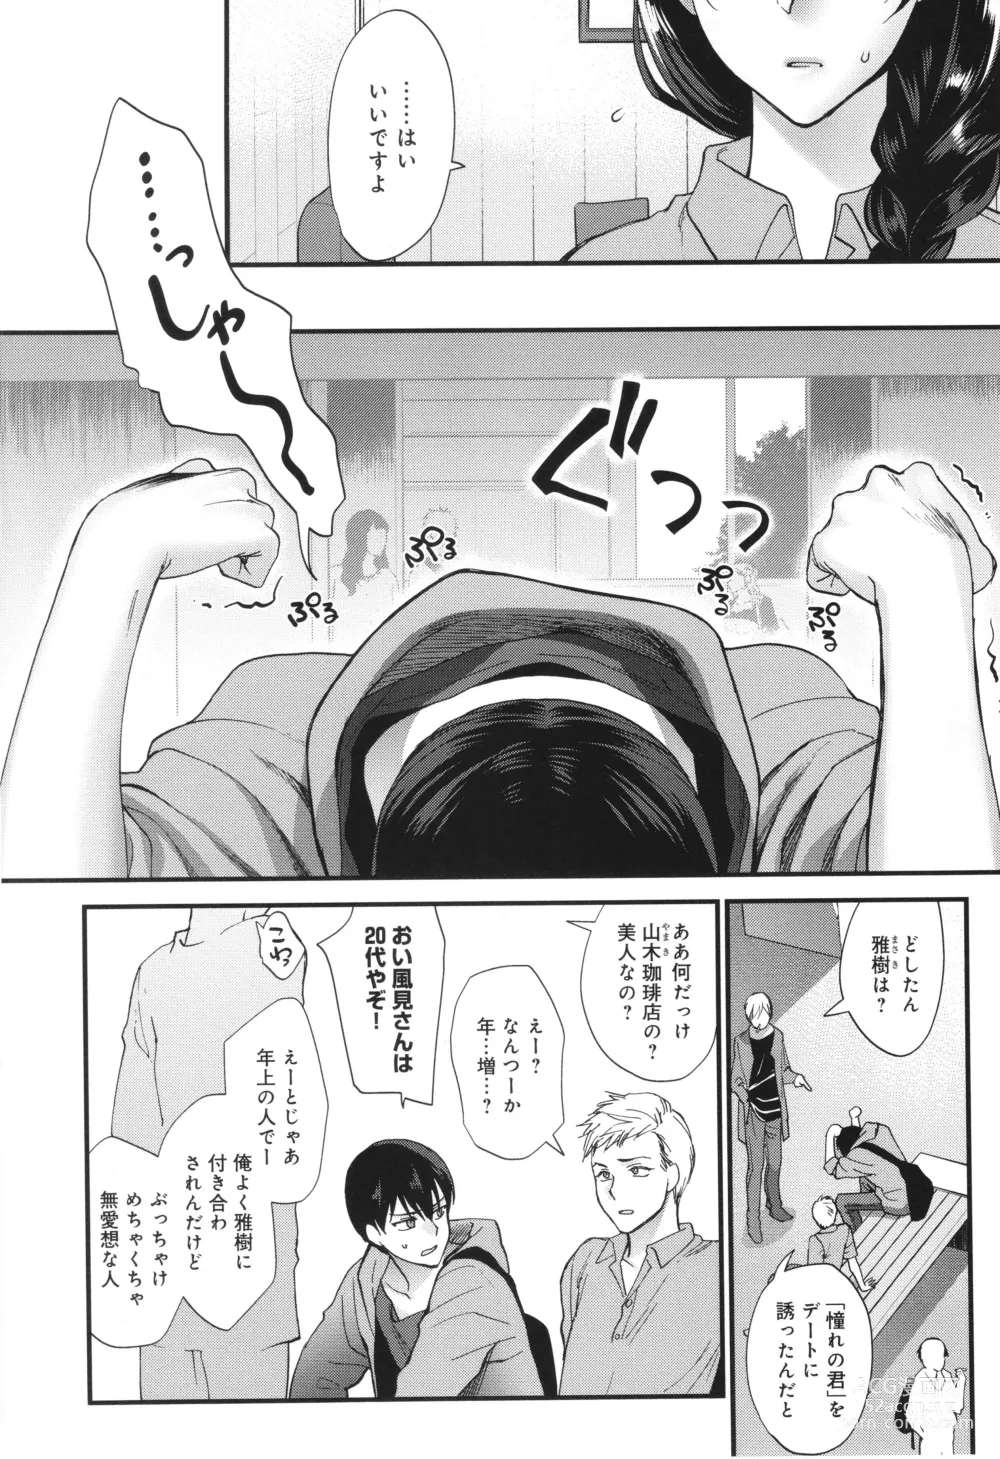 Page 7 of manga Mou Sukoshi Dake, Kono mama de